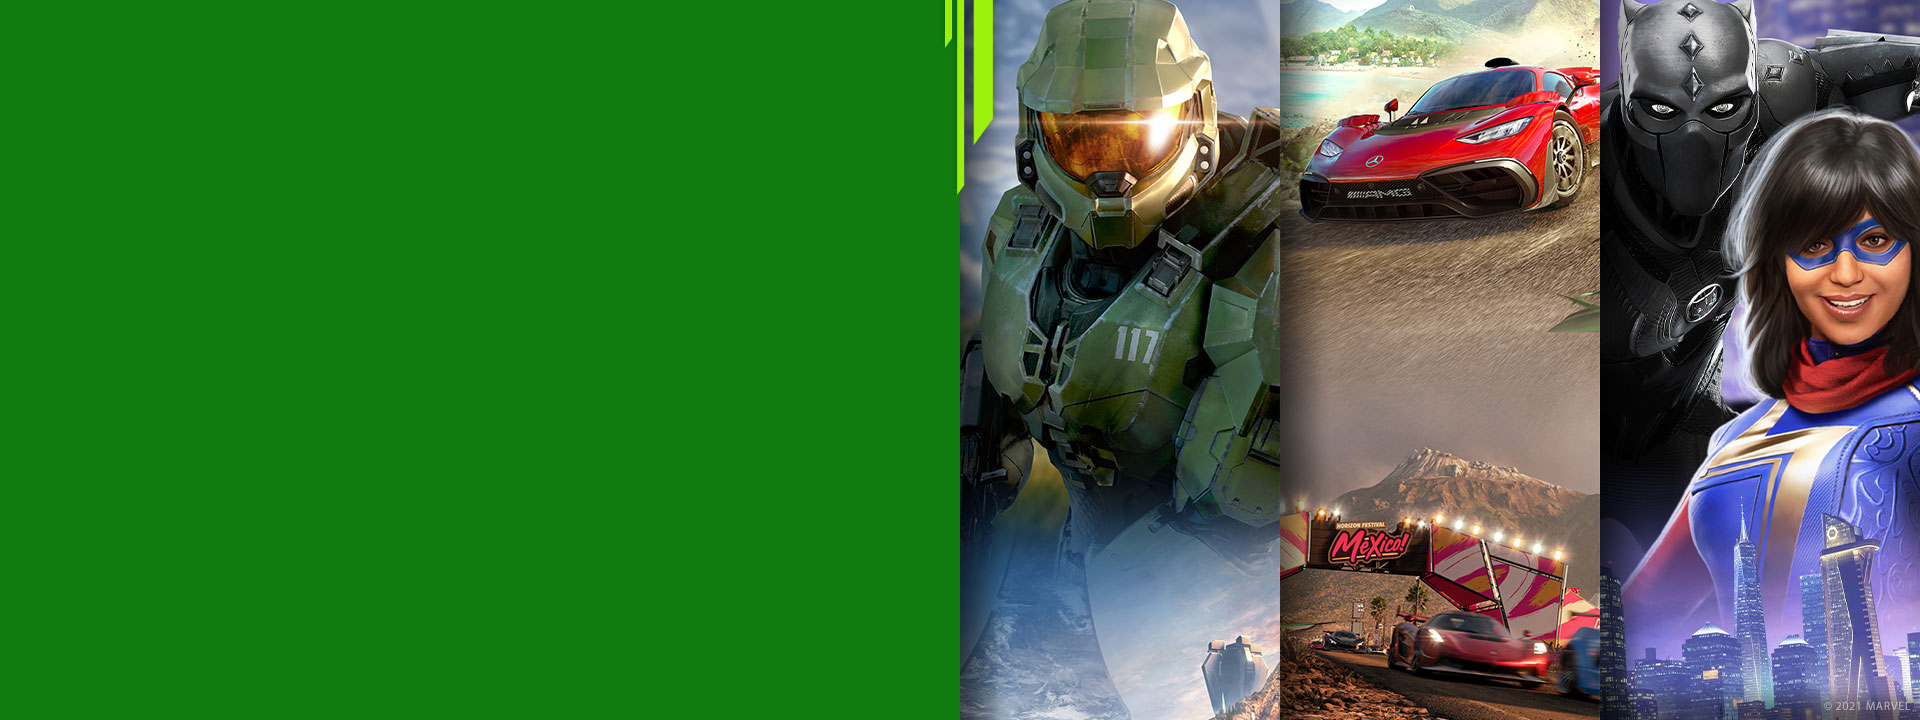 Immagine frontale di diversi personaggi dei giochi per Xbox come Halo Infinite, Forza Horizon 5 e Marvel' s Avengers.